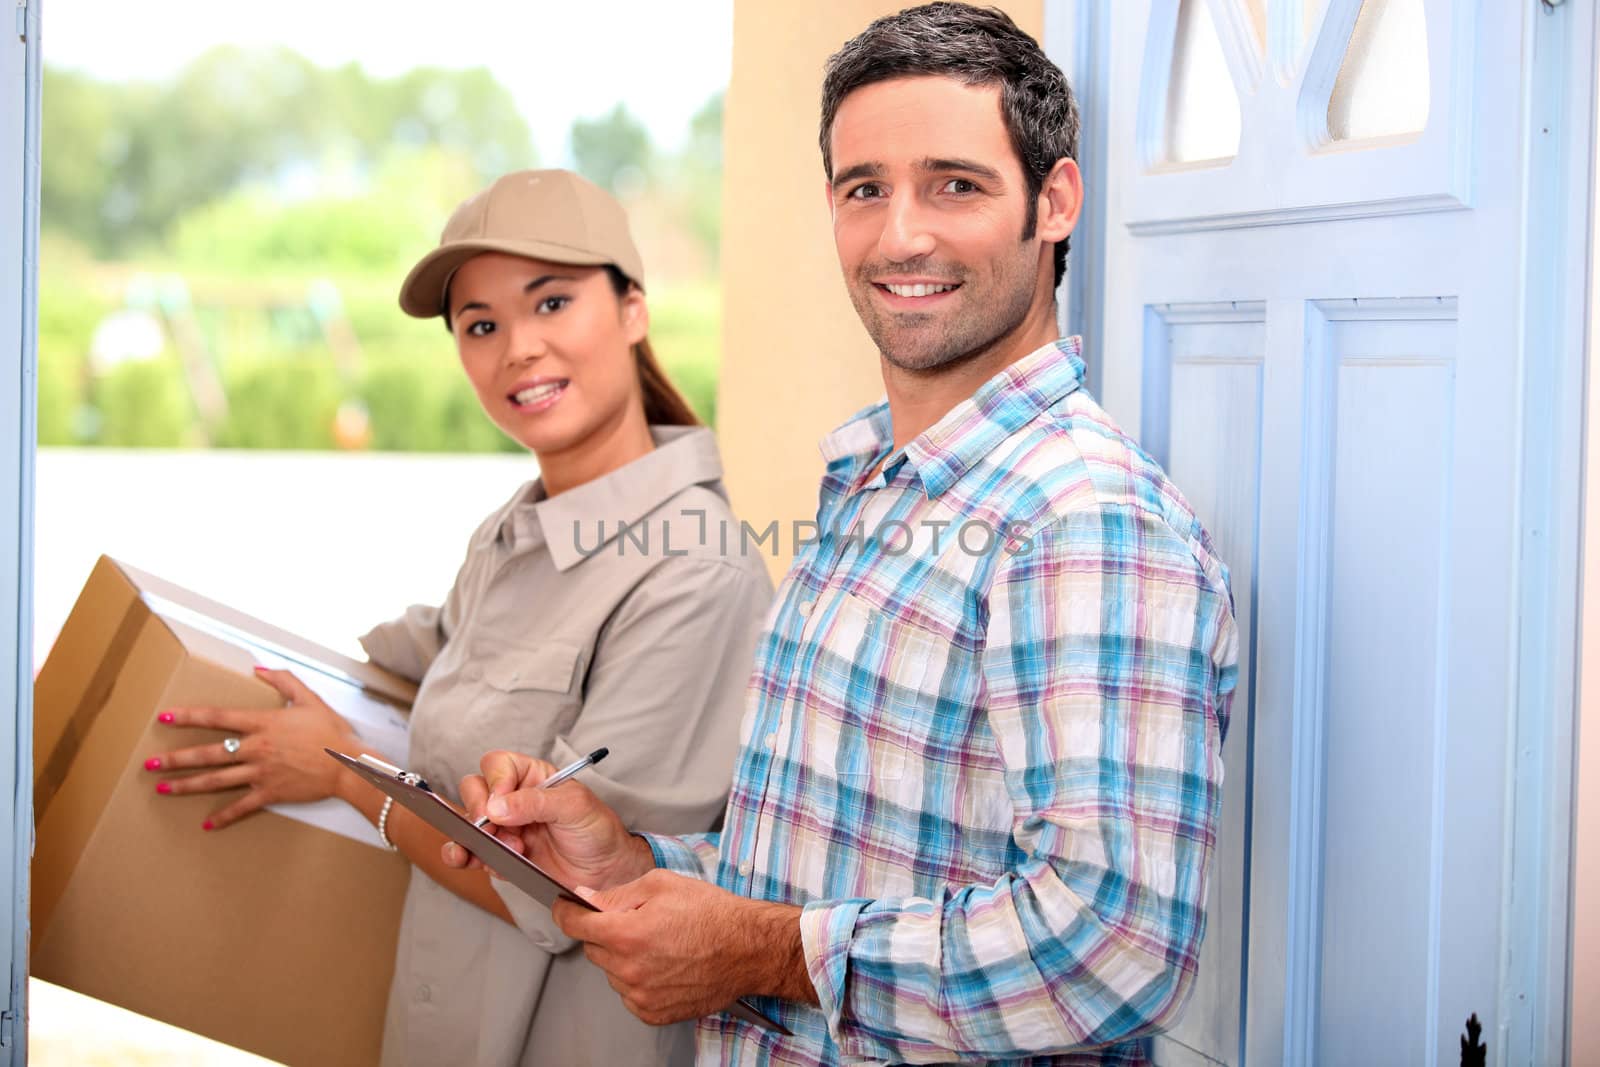 Woman delivering parcel